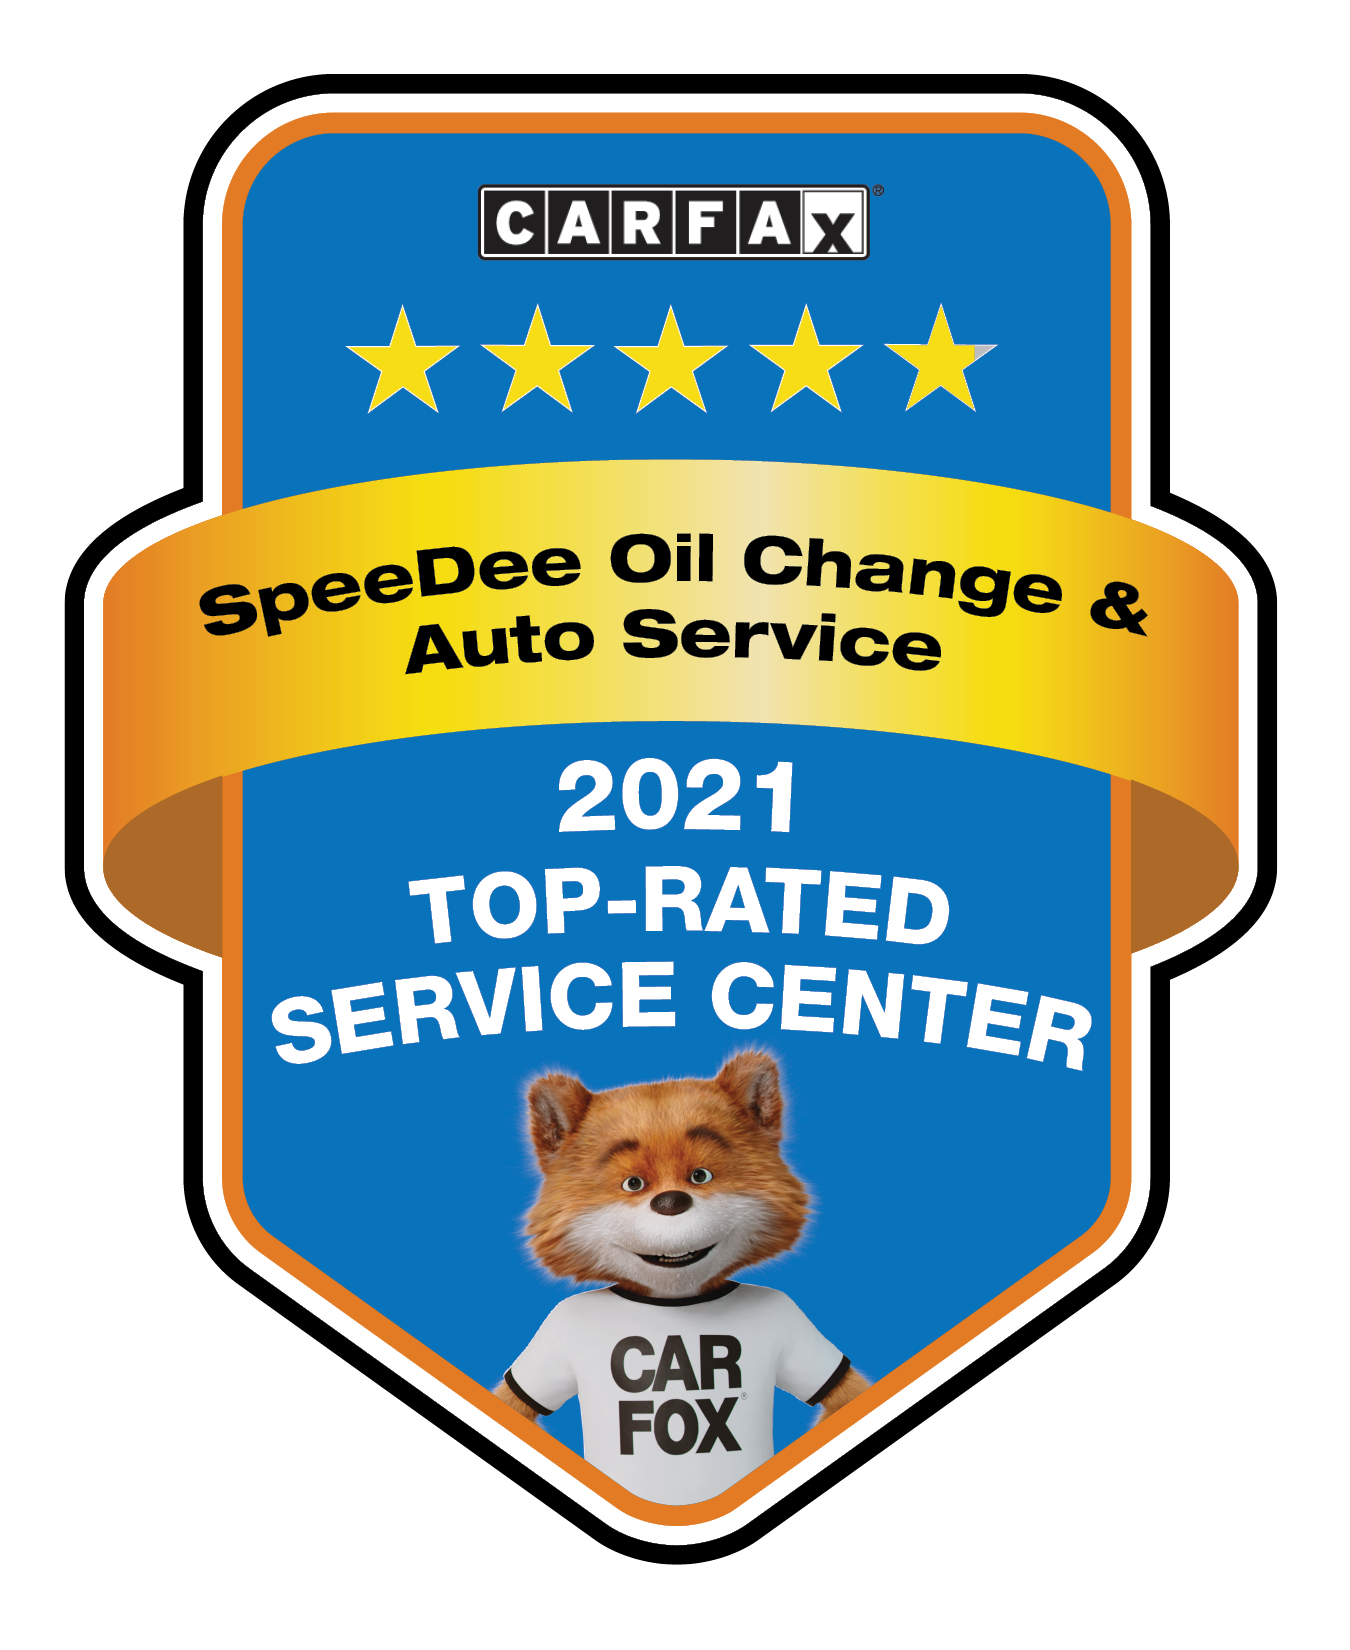 Carfax Service Shop